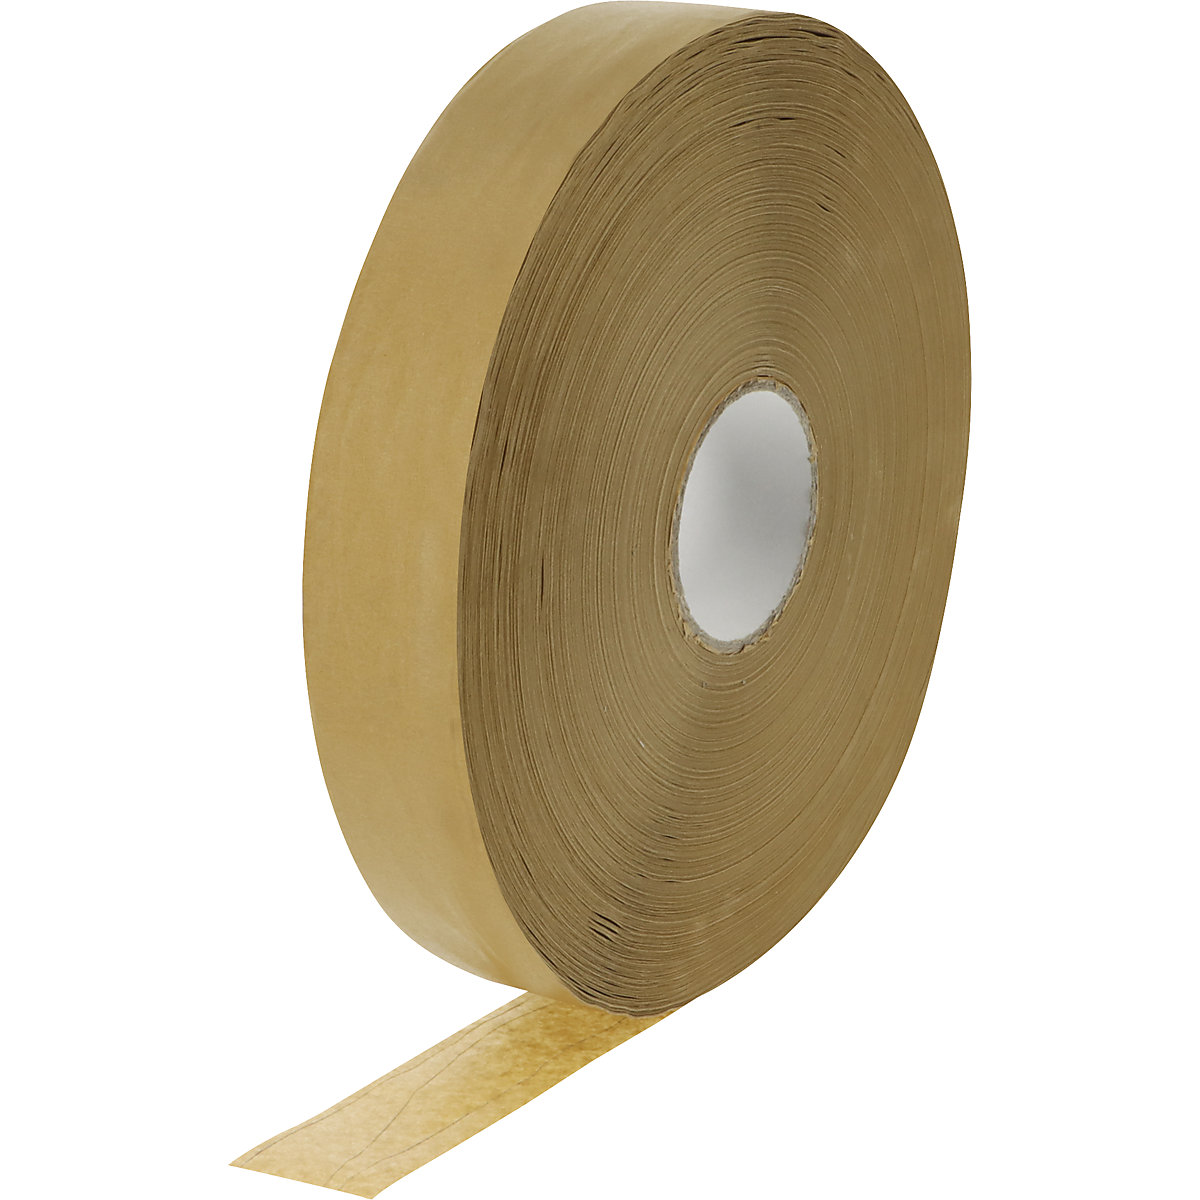 Nastro adesivo macchinabile in carta e-commerce – terra, con filo naturale, gomma naturale, larghezza nastro 50 mm, lunghezza 500 m-1